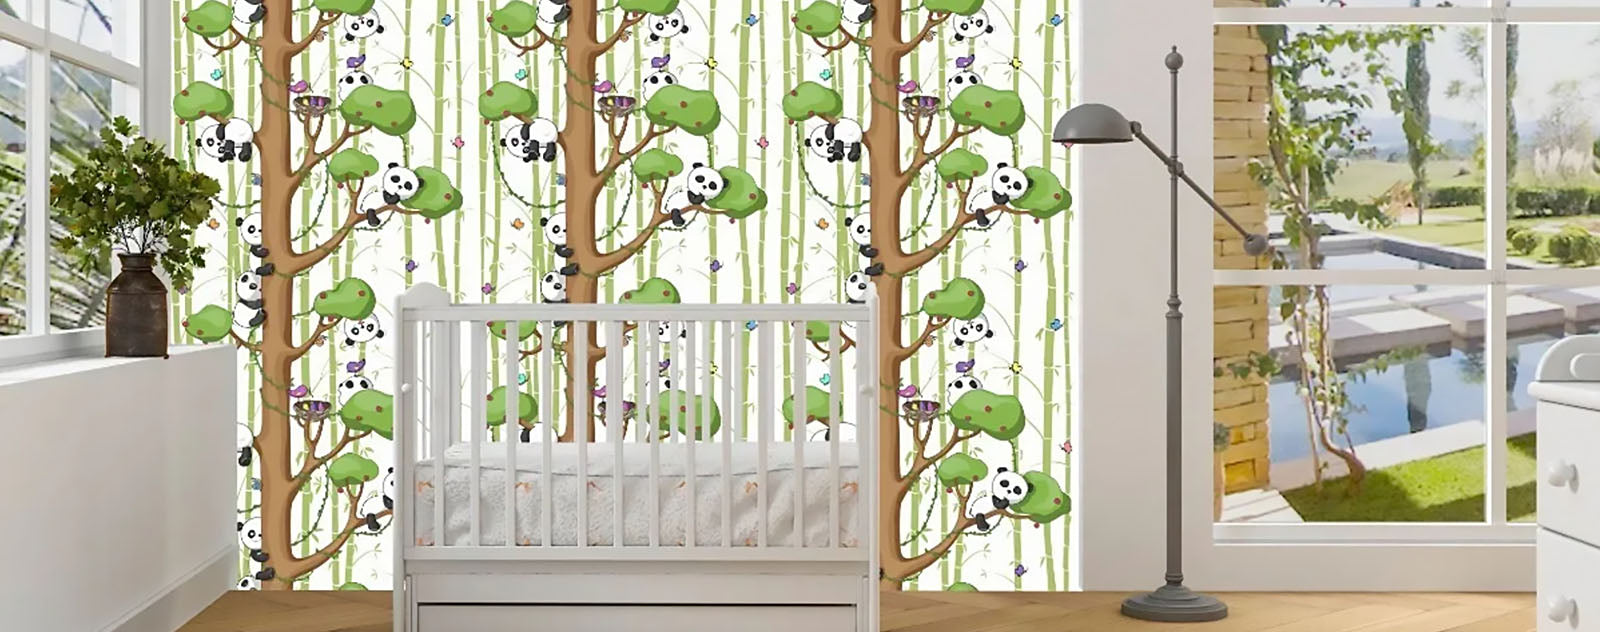 Chambre enfant bambou